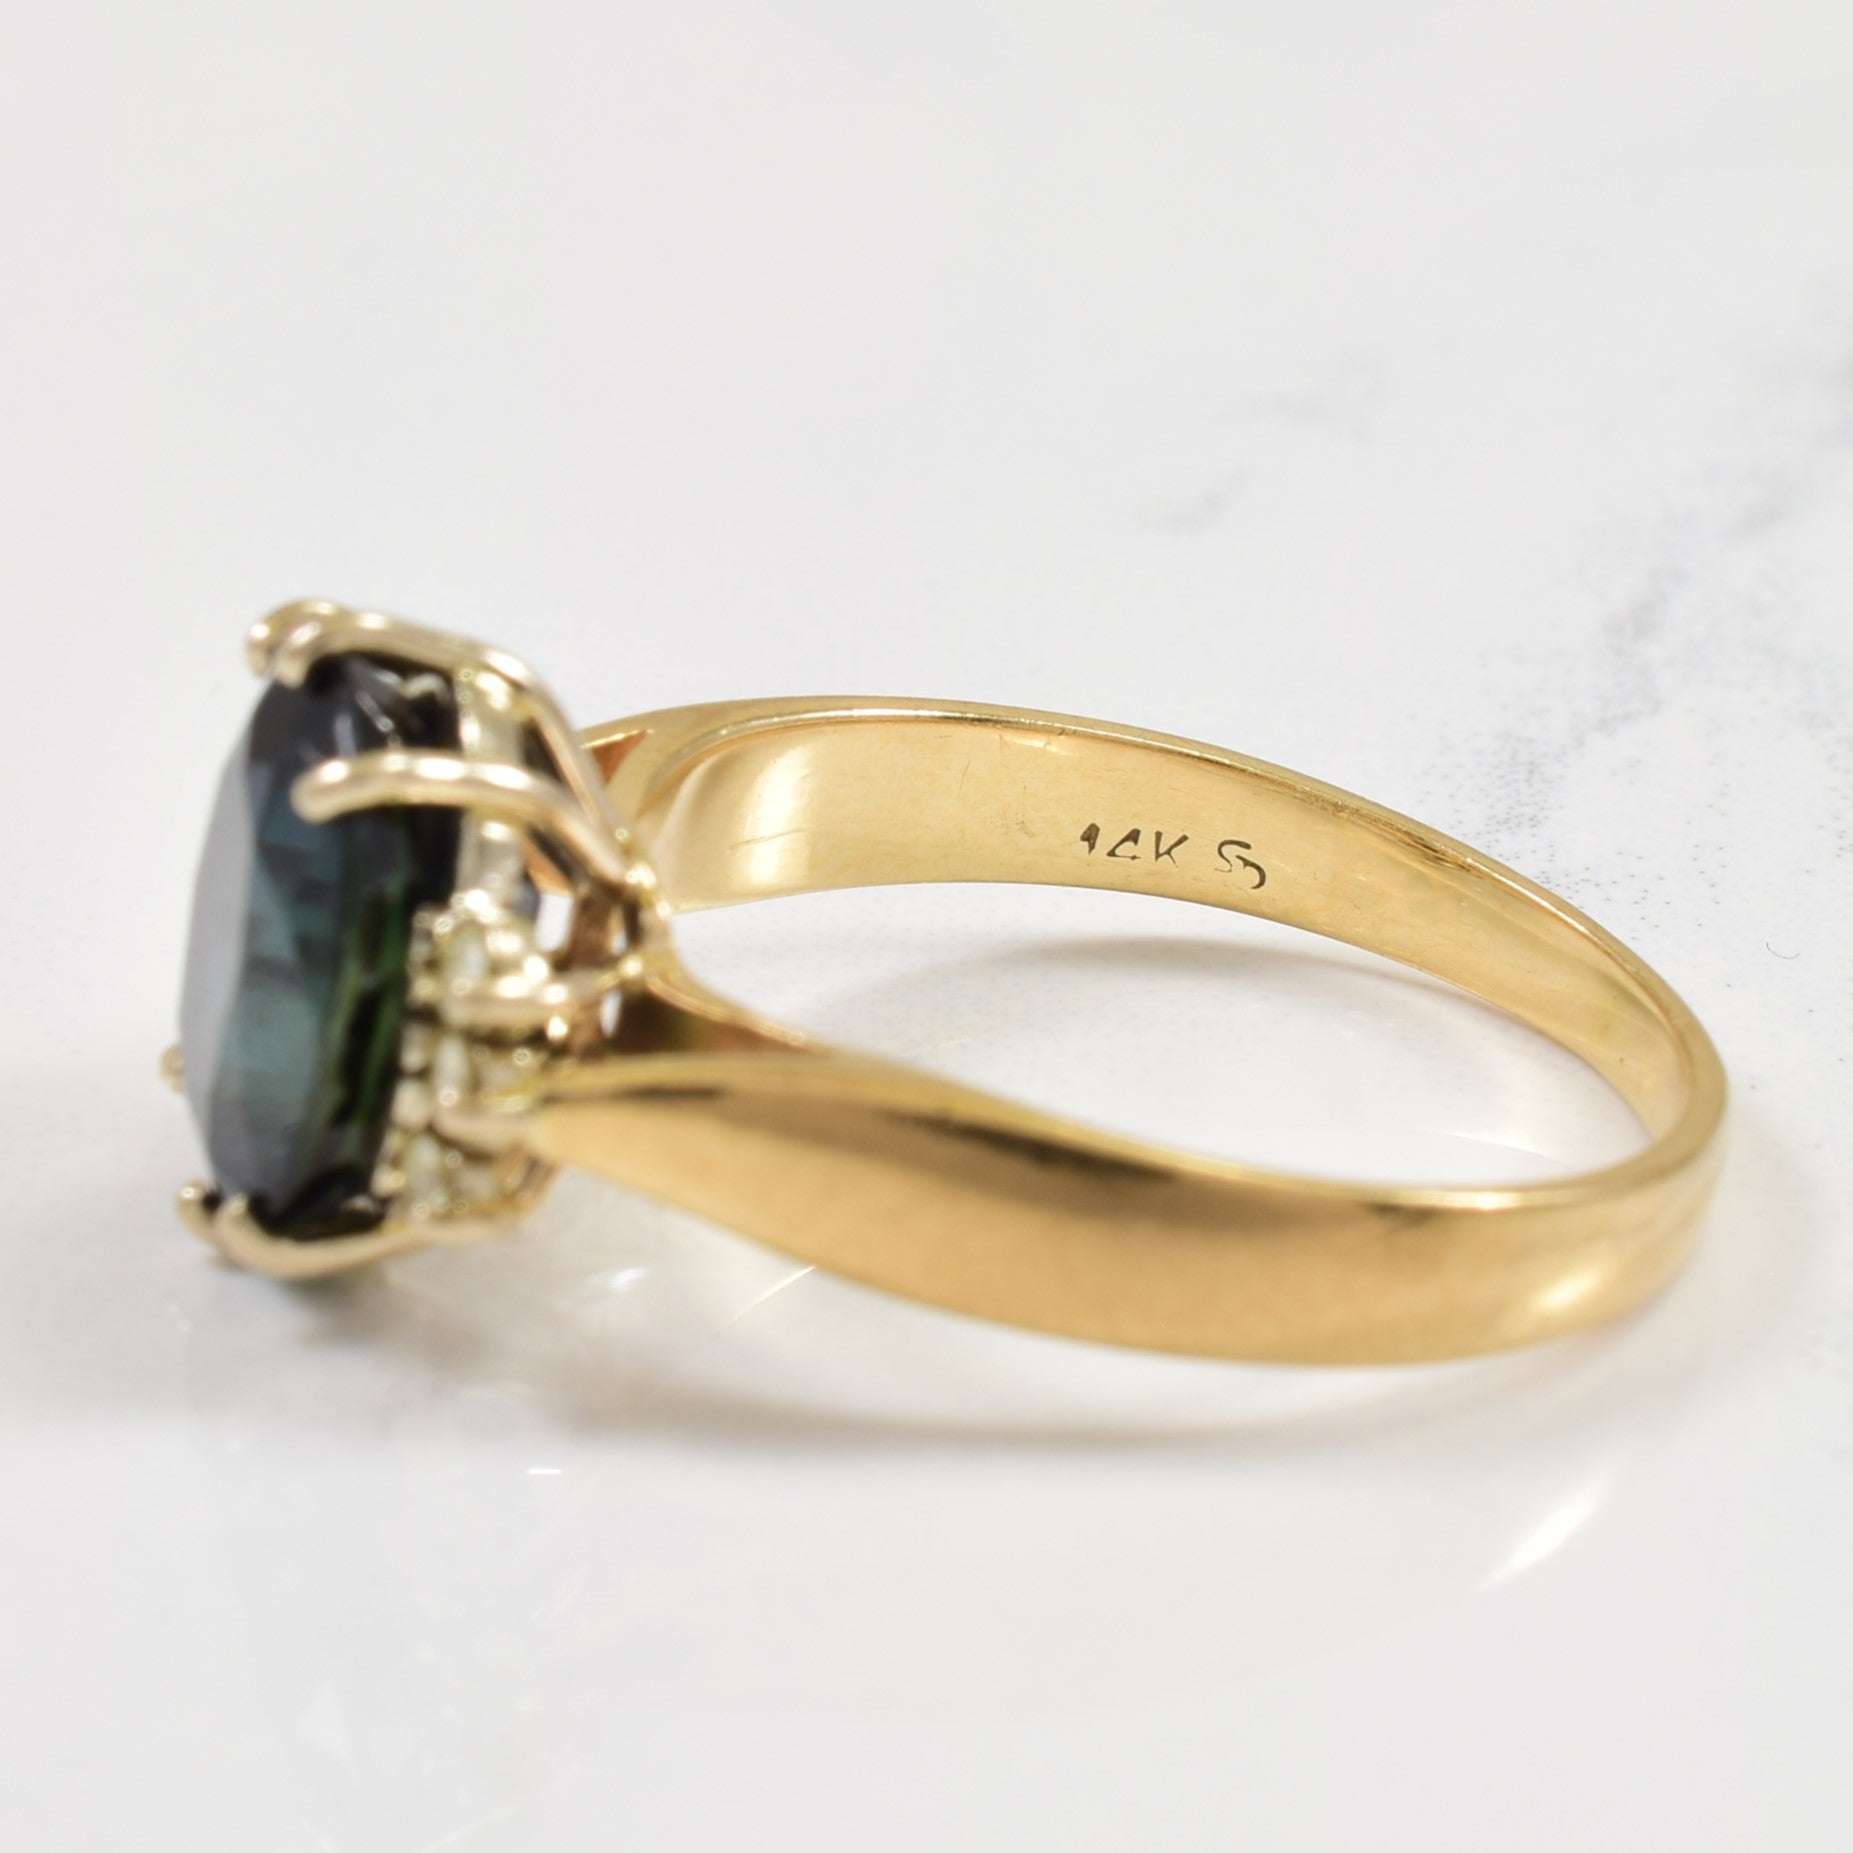 Sapphire & Diamond Ring | 4.00ct, 0.12ctw | SZ 8 |